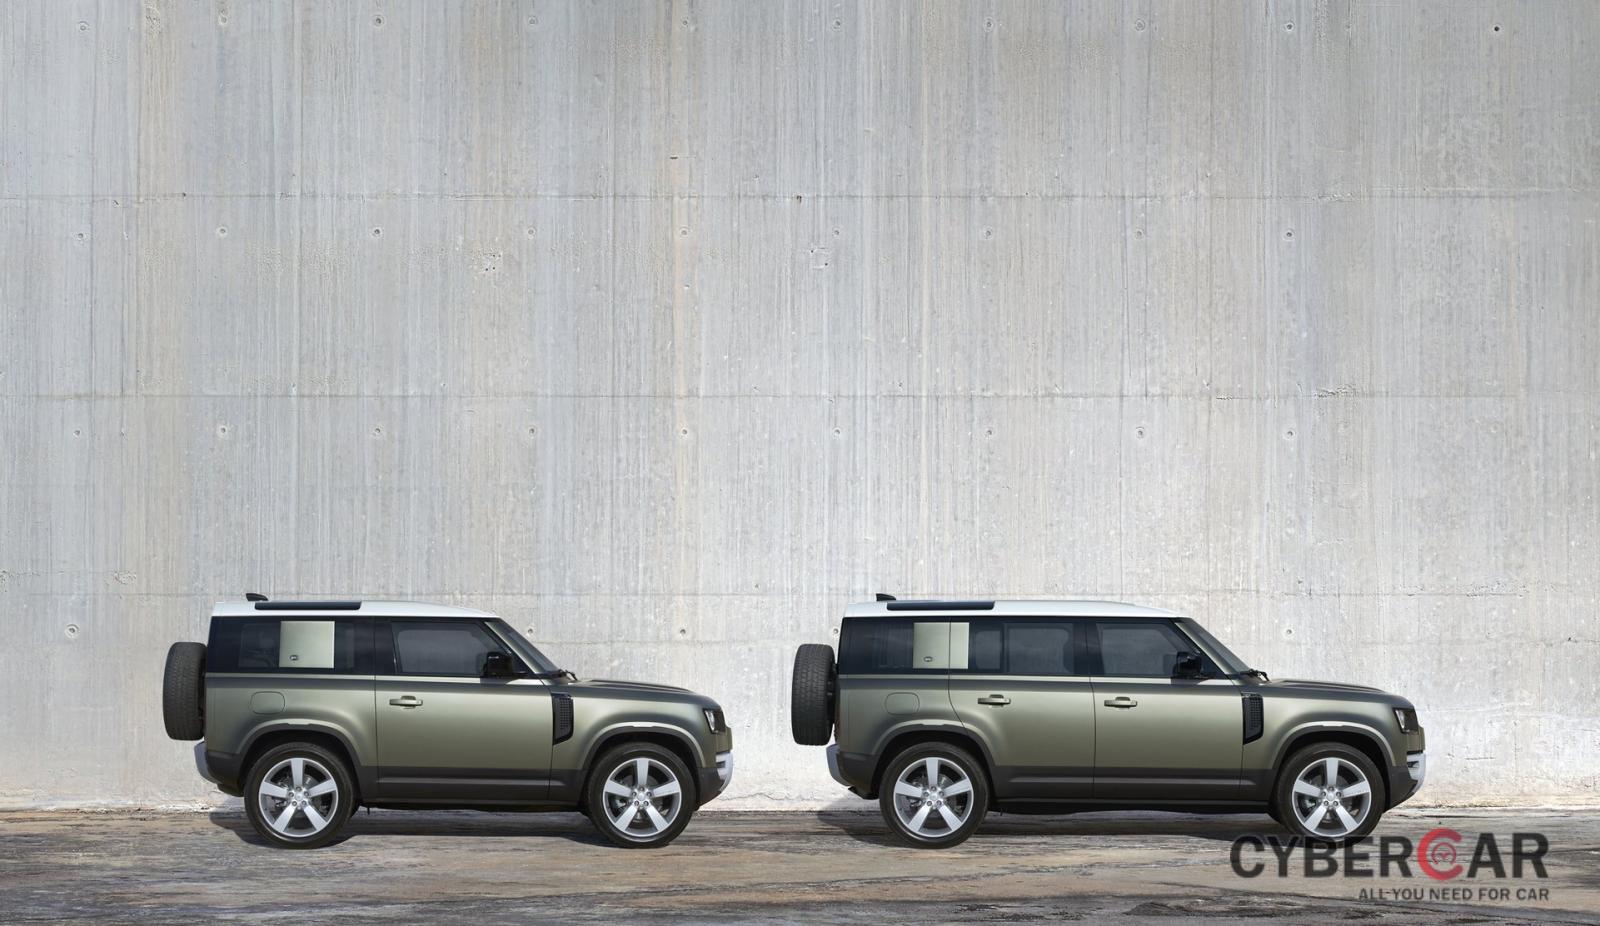 Land Rover Defender 2021 thiết kế đặc trưng, dễ nhận biết.